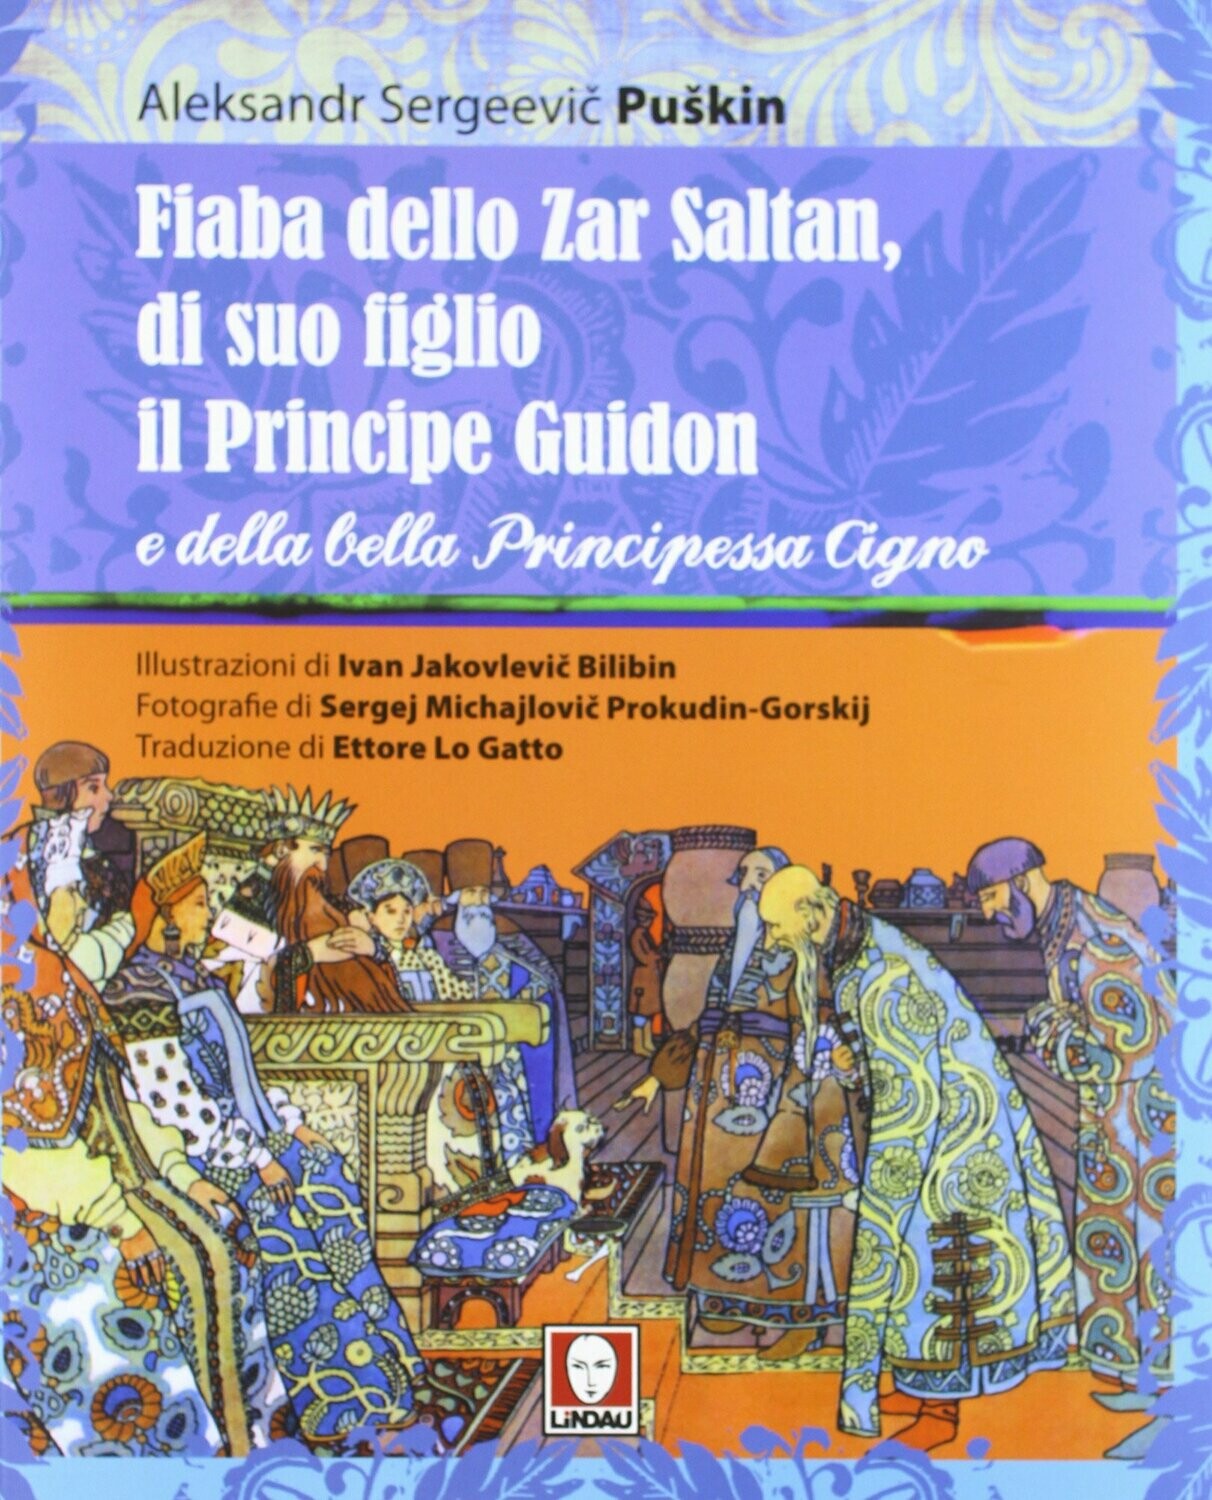 Fiaba dello Zar Saltan, di suo figlio il Principe Guidon e della bella Principessa Cigno